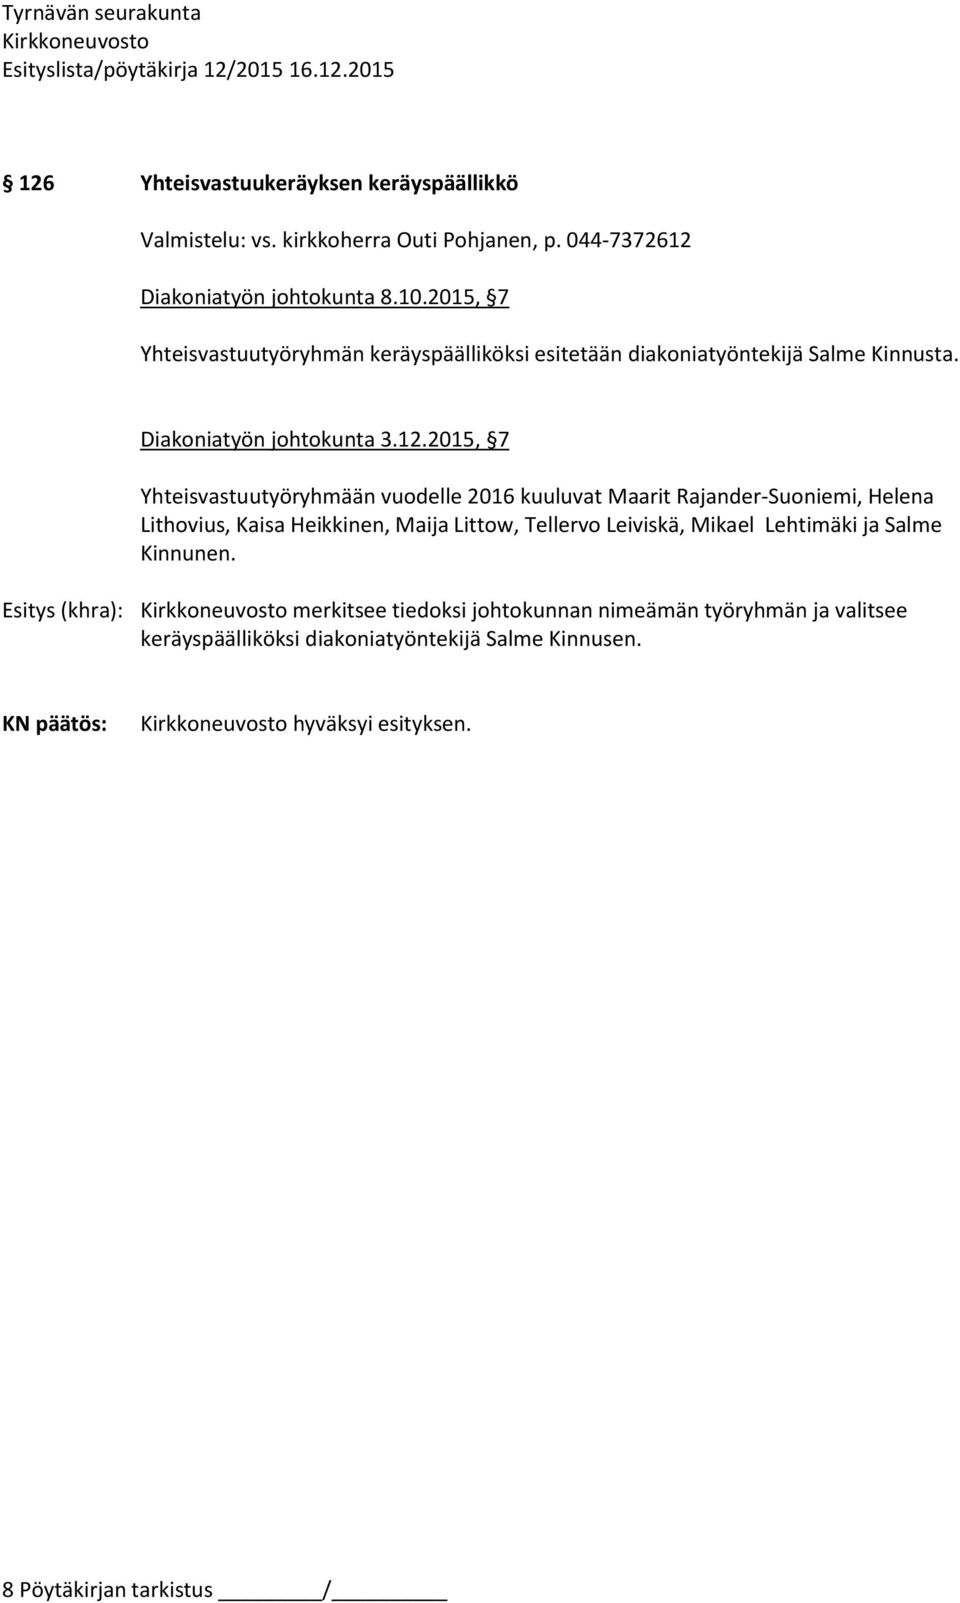 2015, 7 Yhteisvastuutyöryhmään vuodelle 2016 kuuluvat Maarit Rajander-Suoniemi, Helena Lithovius, Kaisa Heikkinen, Maija Littow, Tellervo Leiviskä,